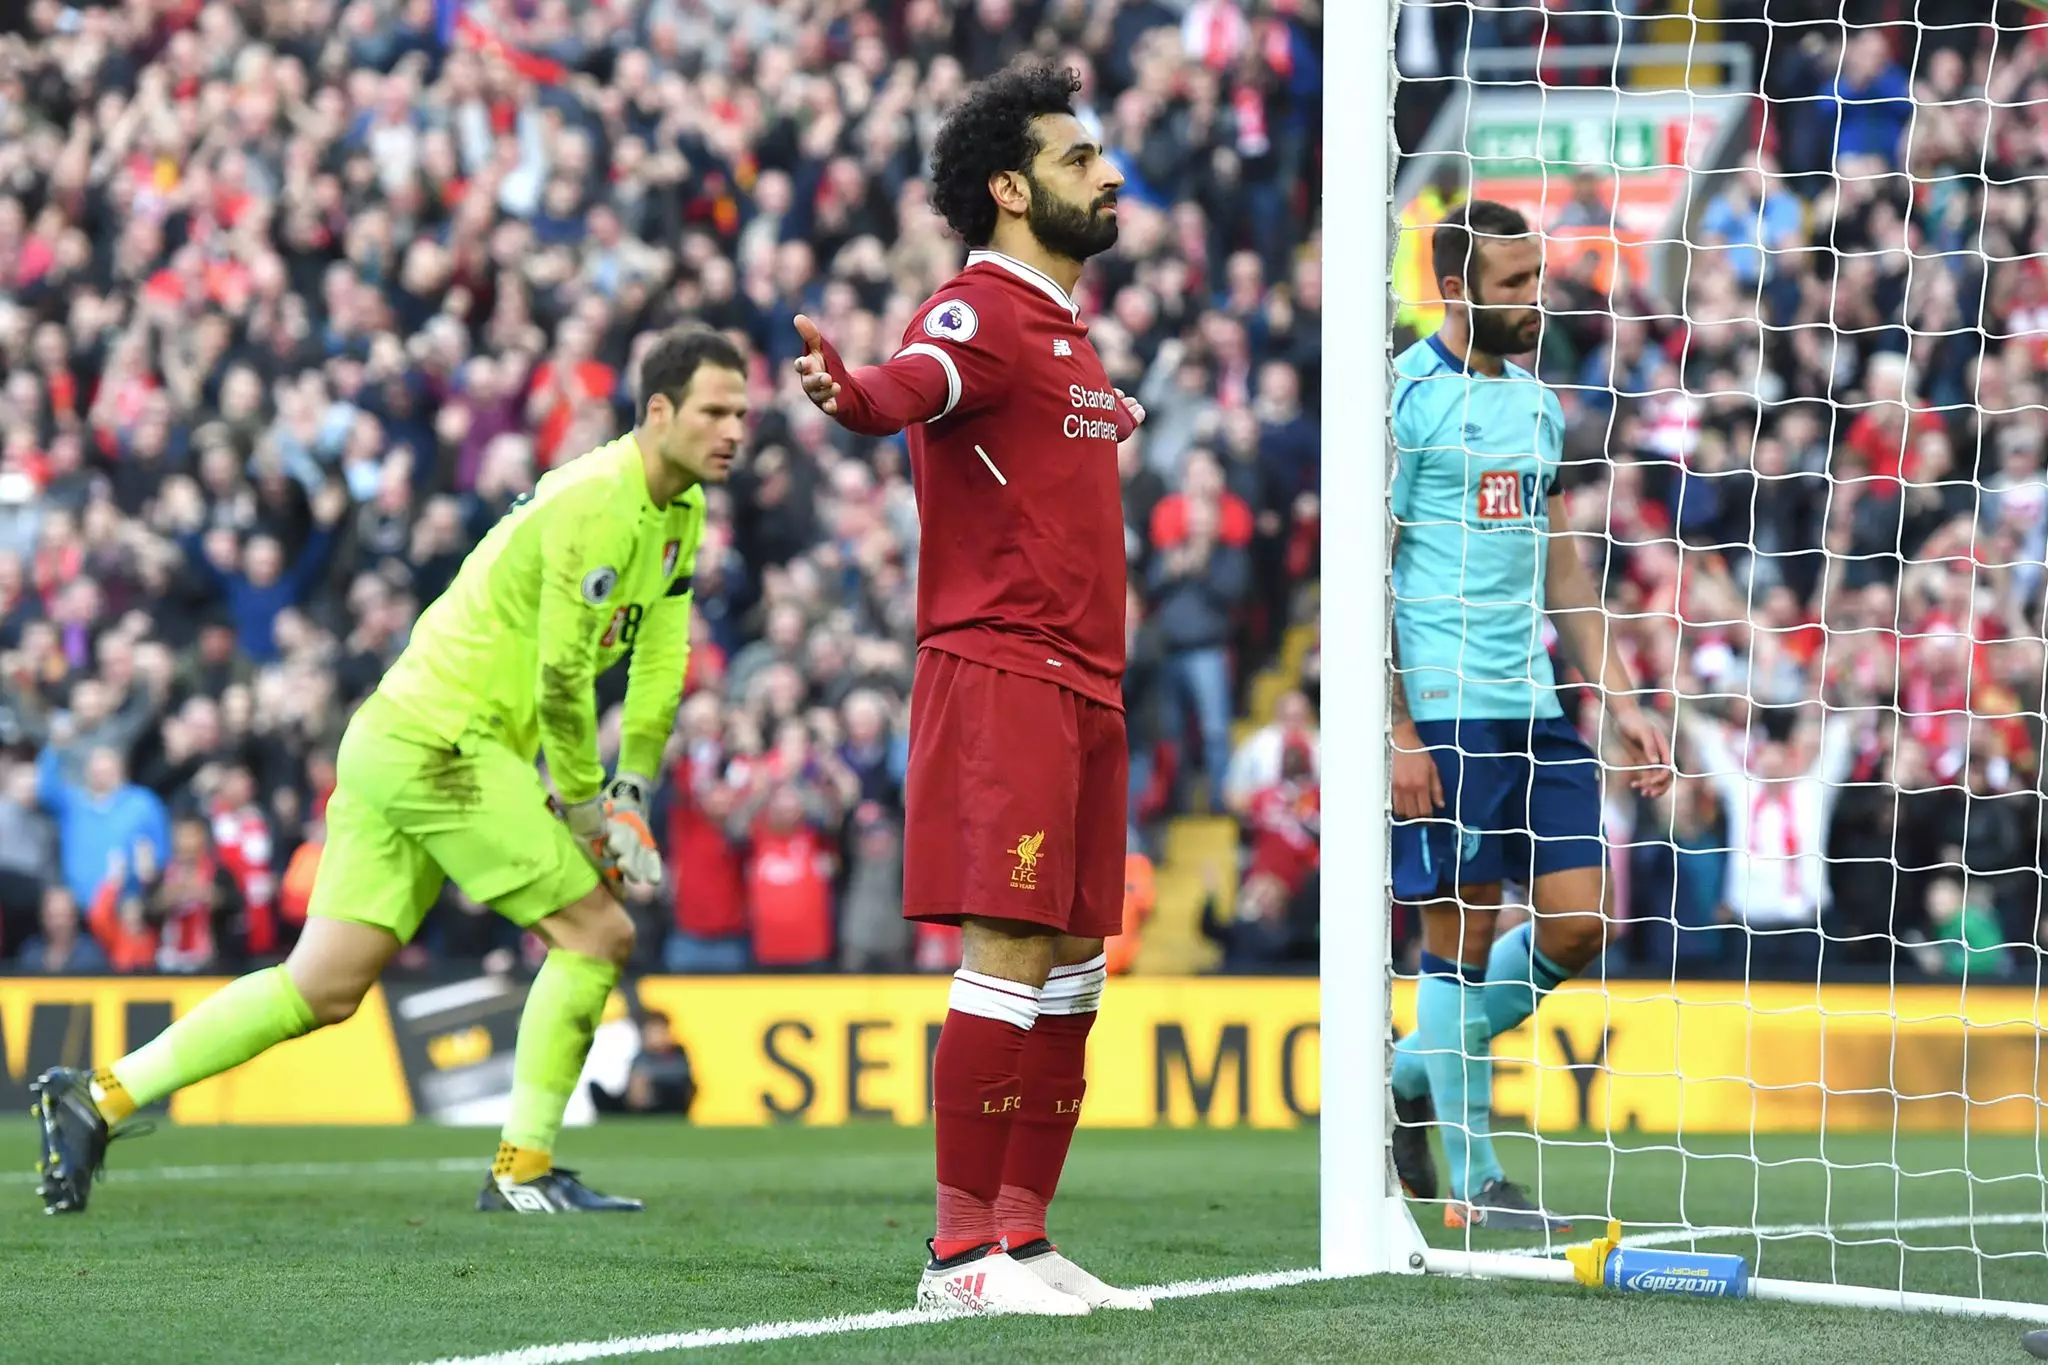 Salah celebrates scoring a goal. Image: PA